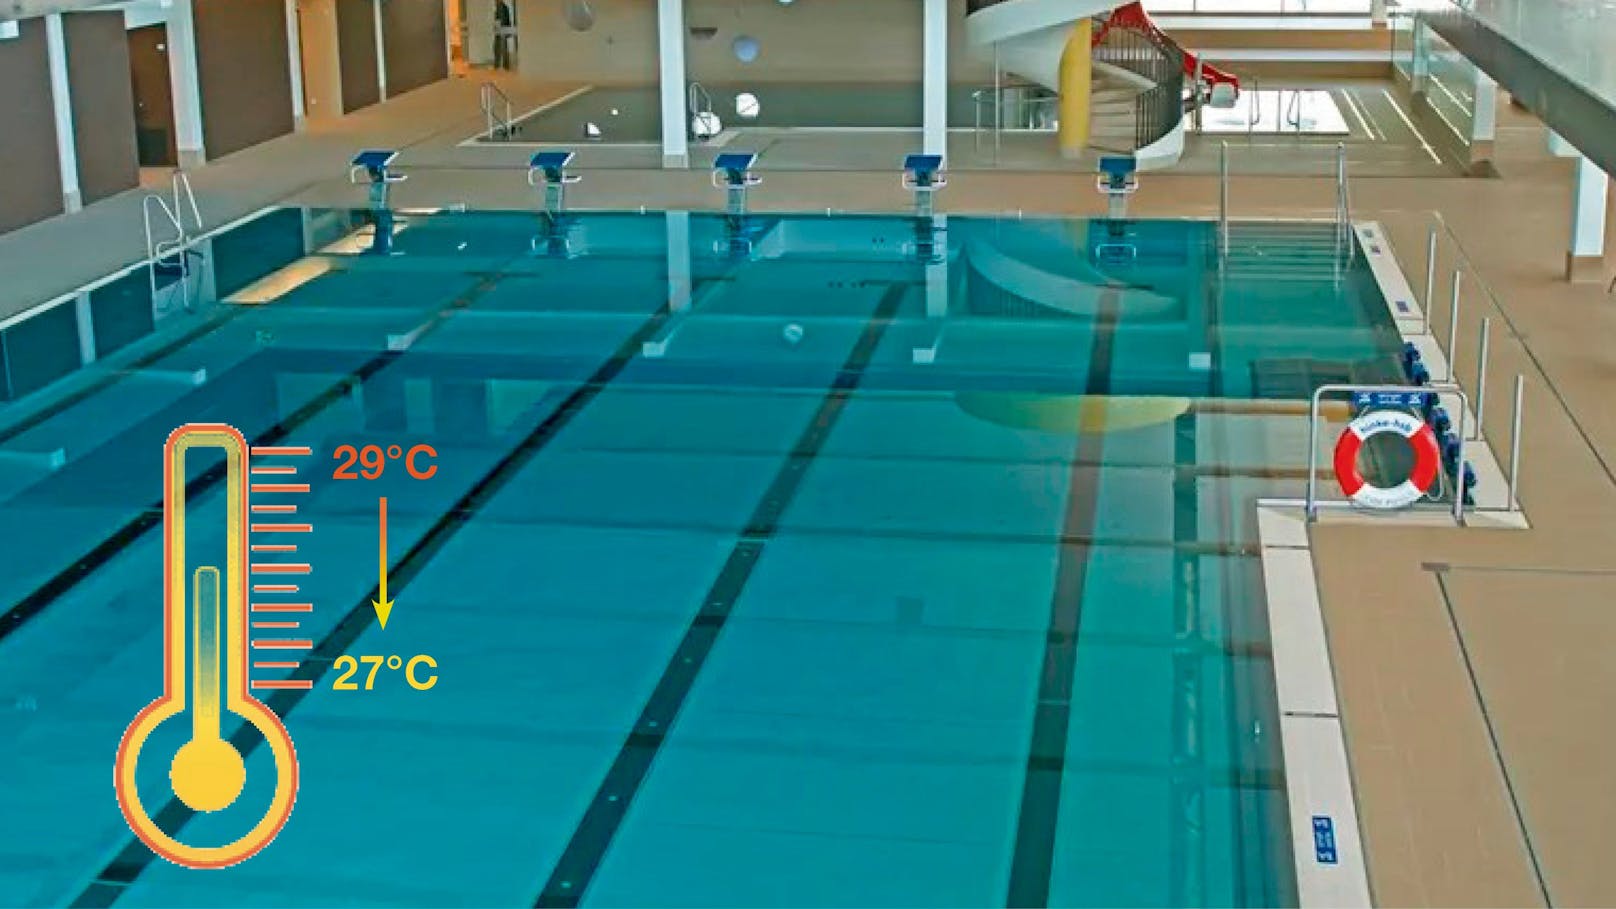 Die Becken in Wiens Hallenbädern haben diesen Winter nur noch 27 Grad. Grund ist die Energiekrise. Auch andere Städte in Österreich, wie Braunau, sparen an der Gemütlichkeit im Pool.